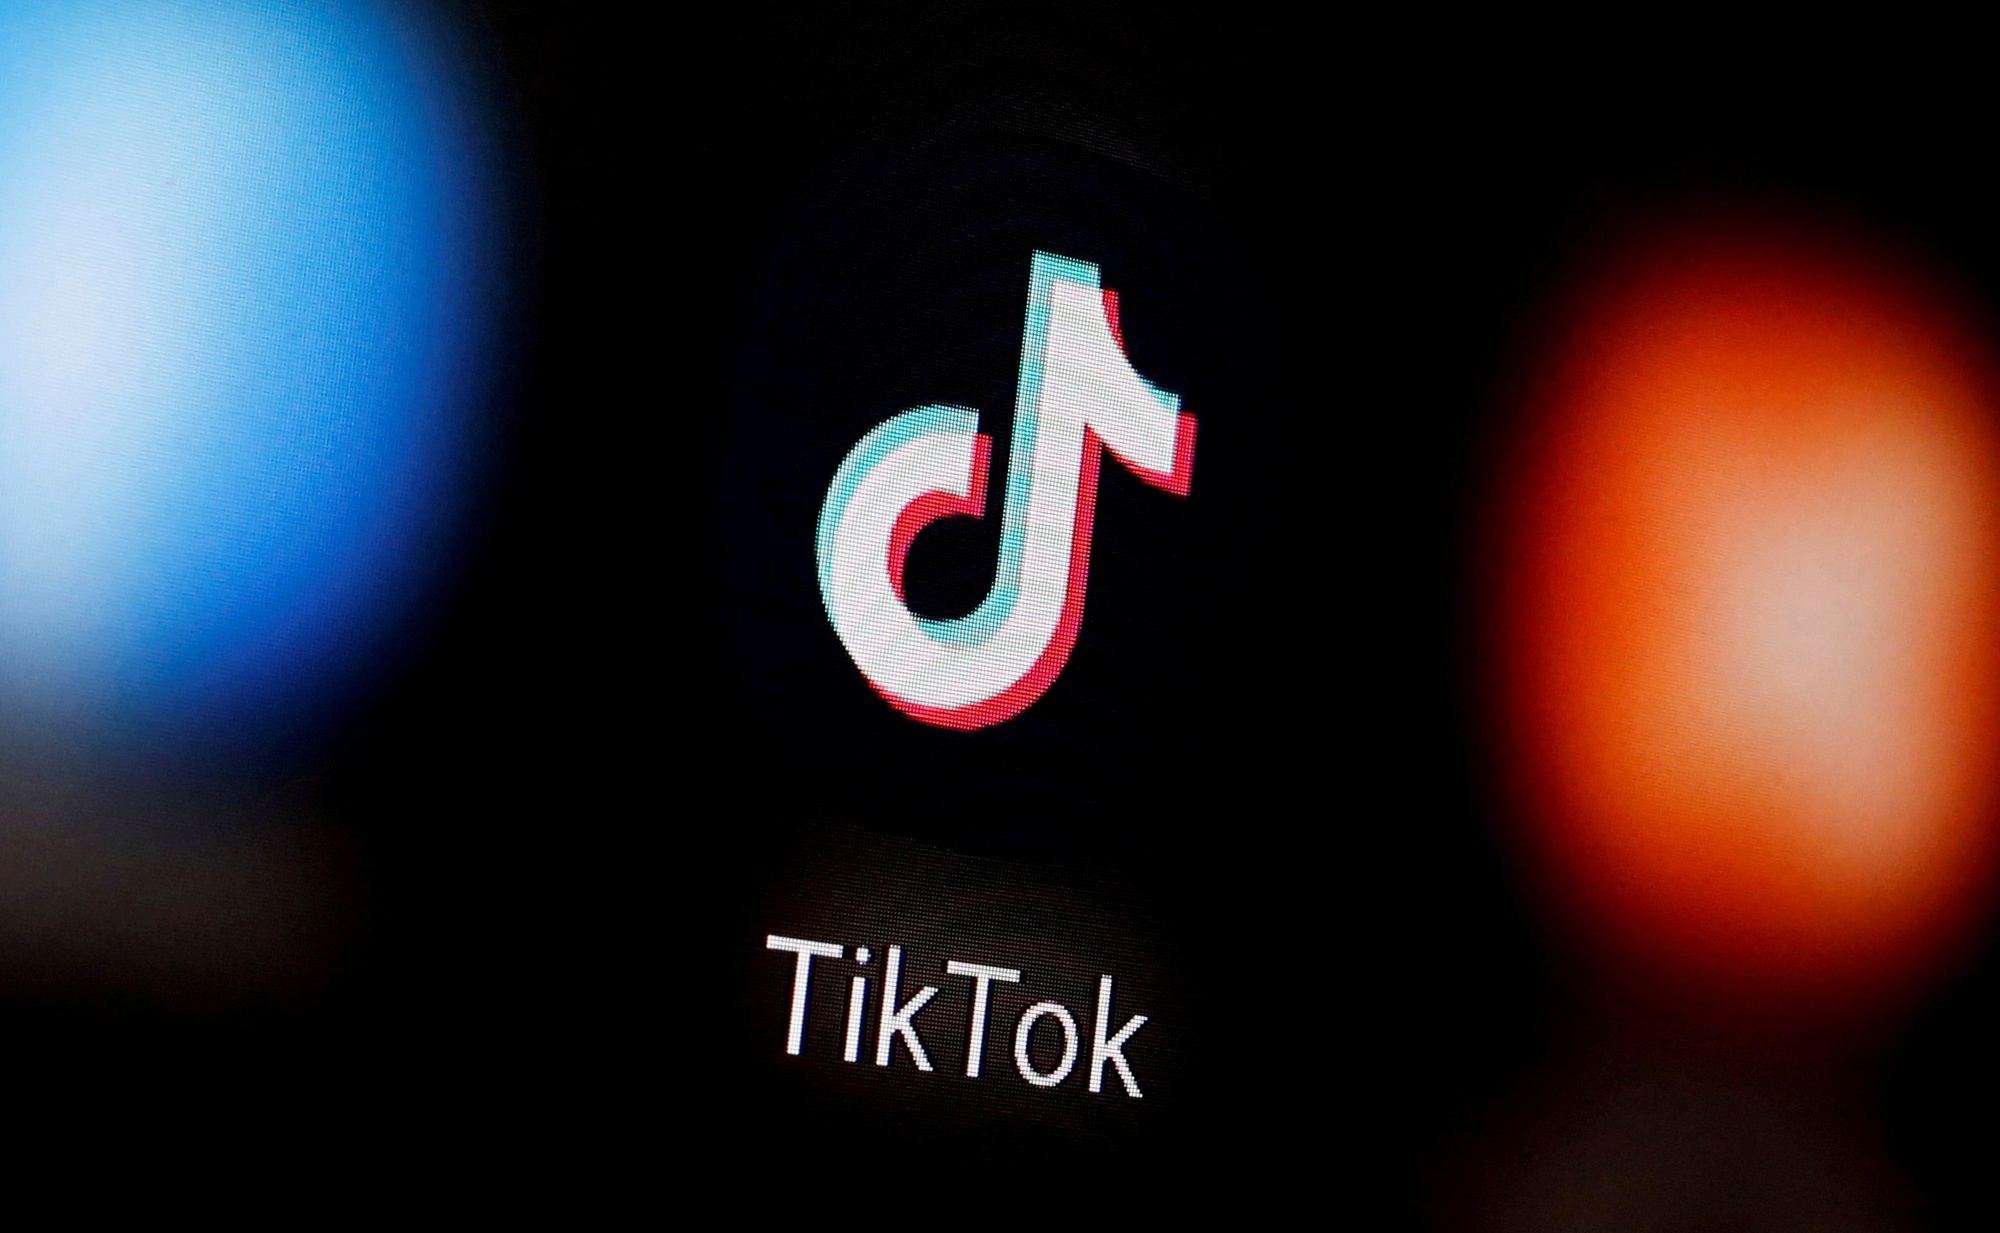 Quốc hội Mỹ thông qua dự luật cấm TikTok trên các thiết bị công - Ảnh 2.